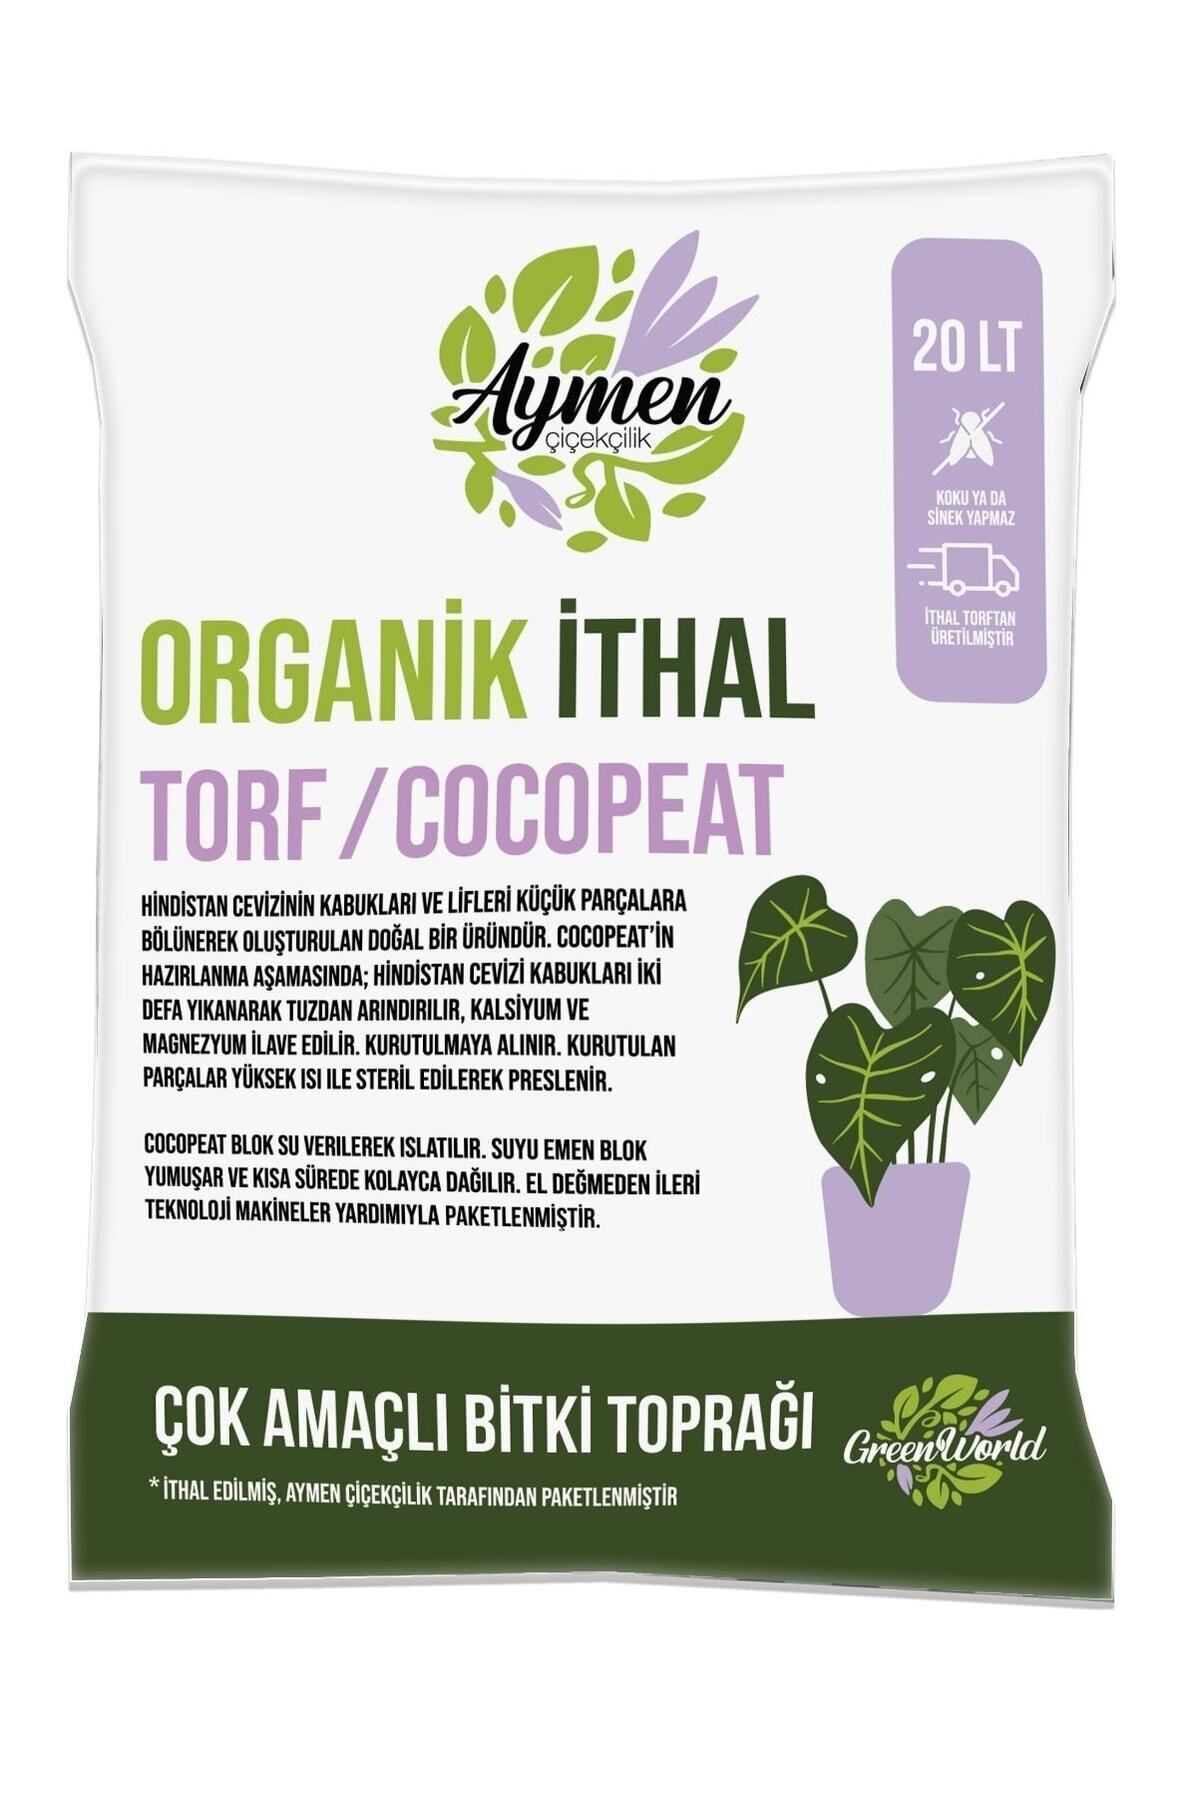 Aymen Çiçekçilik 20 Litre Ithal Torf Cocopeat Özel Karışım Saksı Harcı Bitki Toprağı - Kokopit